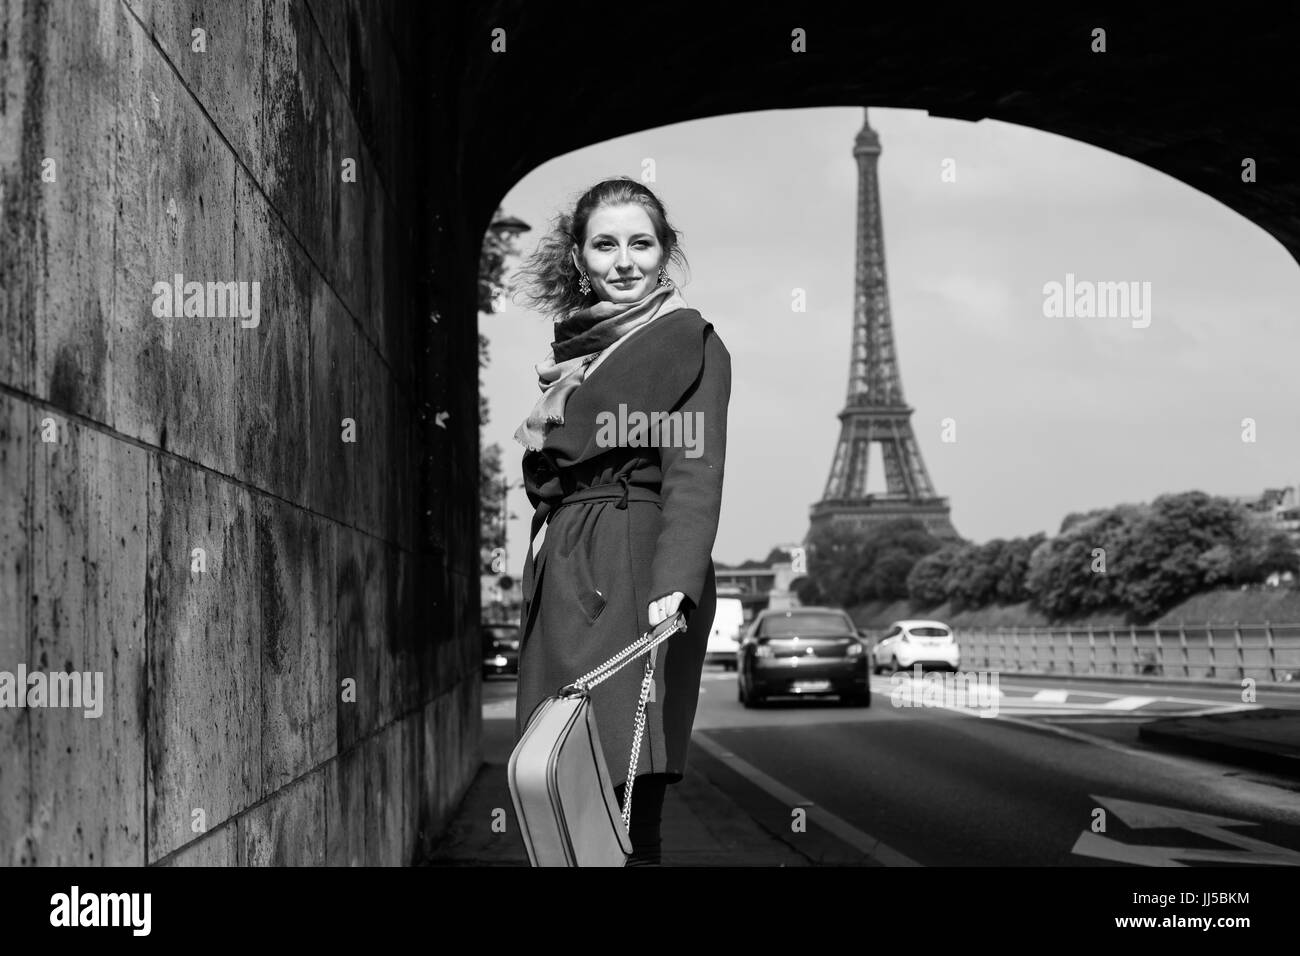 Mode Frau in Paris, Mädchen, das Modell in der Nähe von Eiffelturm, Shopping, Schwarz und Weiß Foto Stockfoto